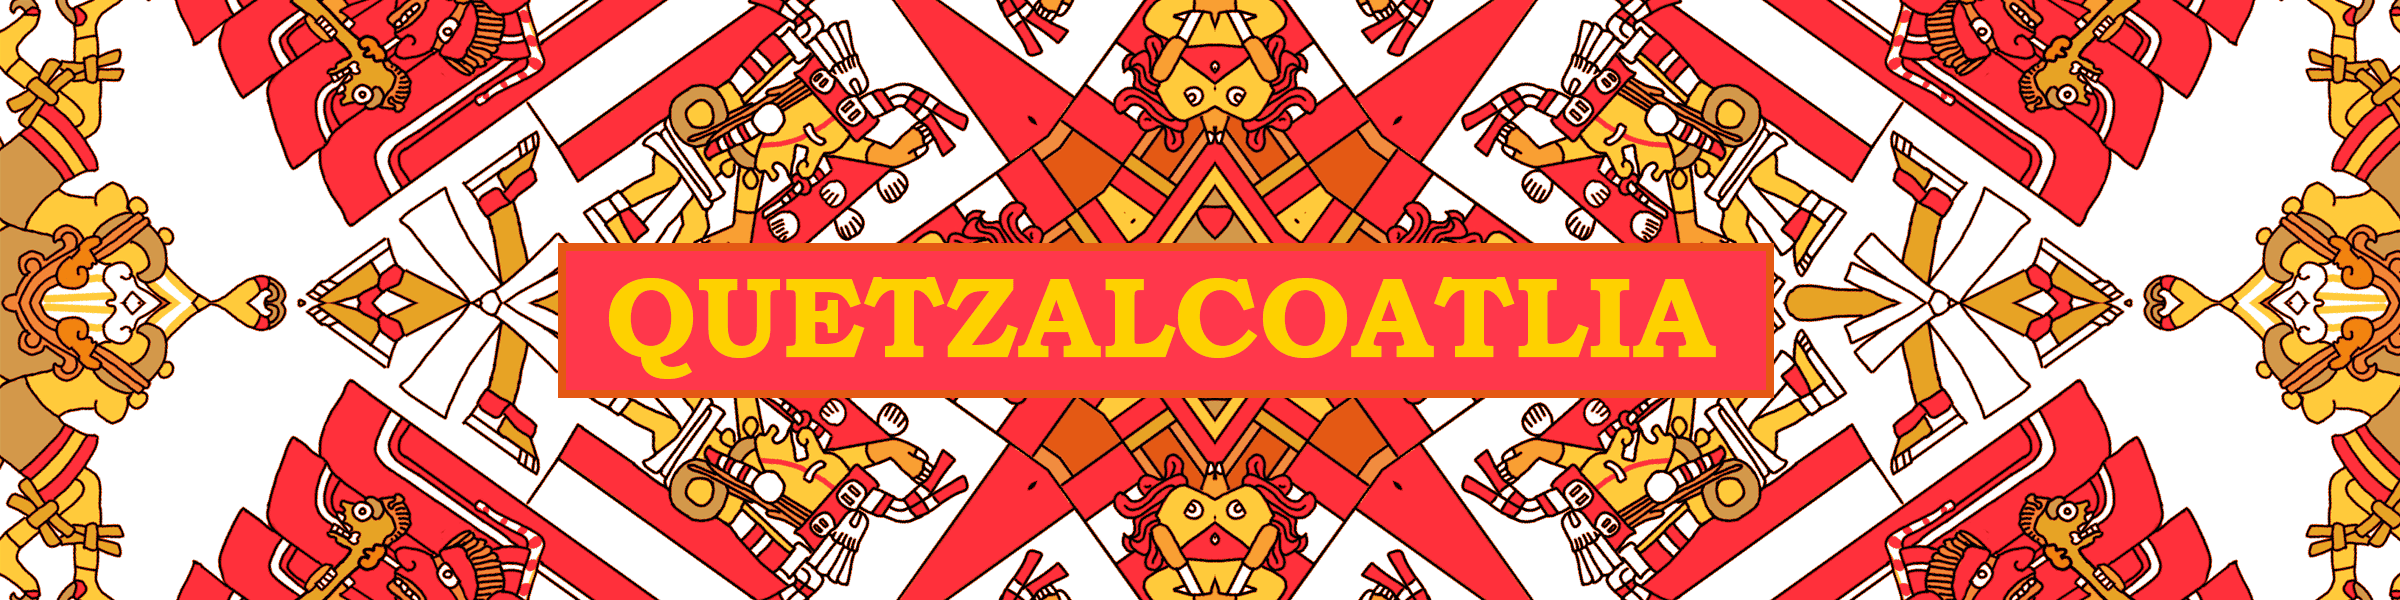 Quetzalcoatlia banner